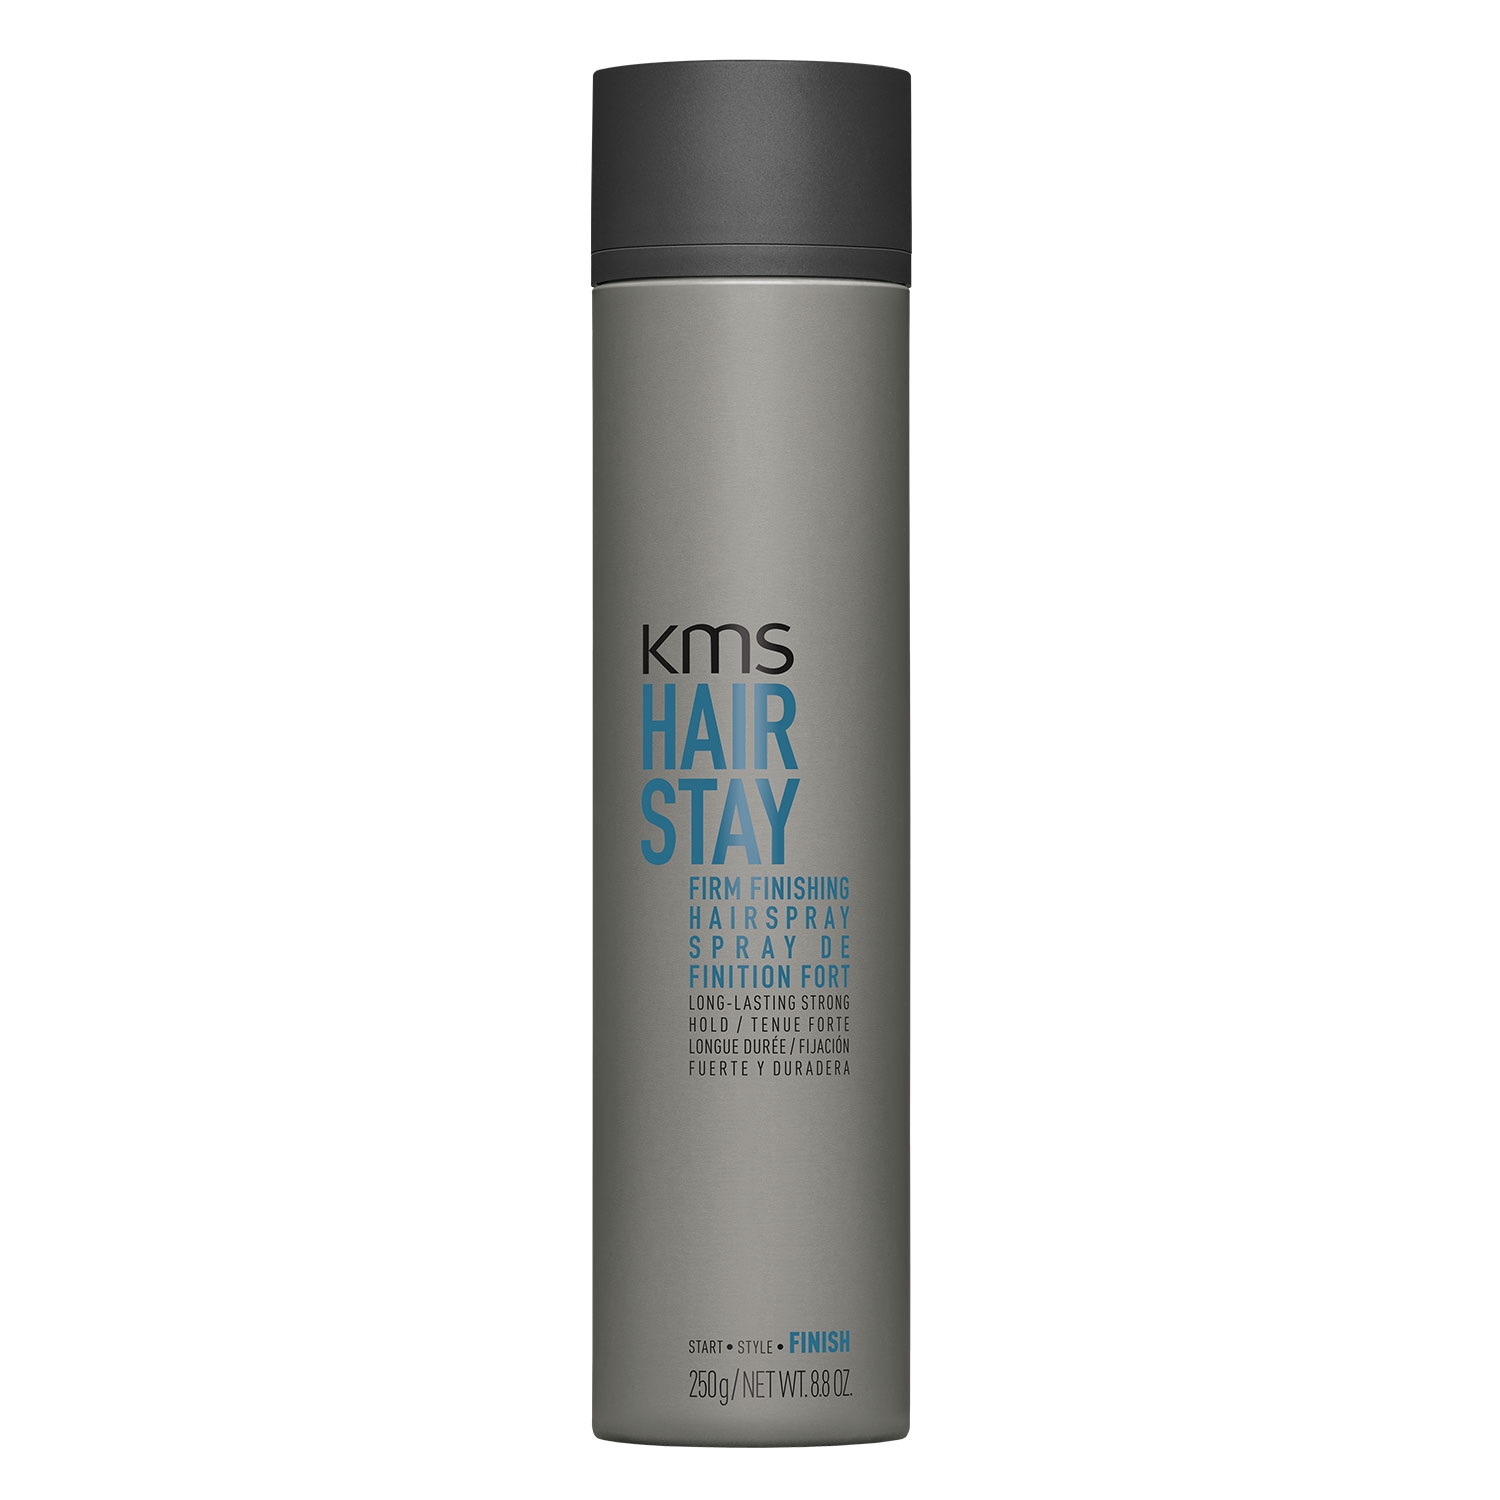 Produktbild von Hairstay - Firm Finishing Hairspray